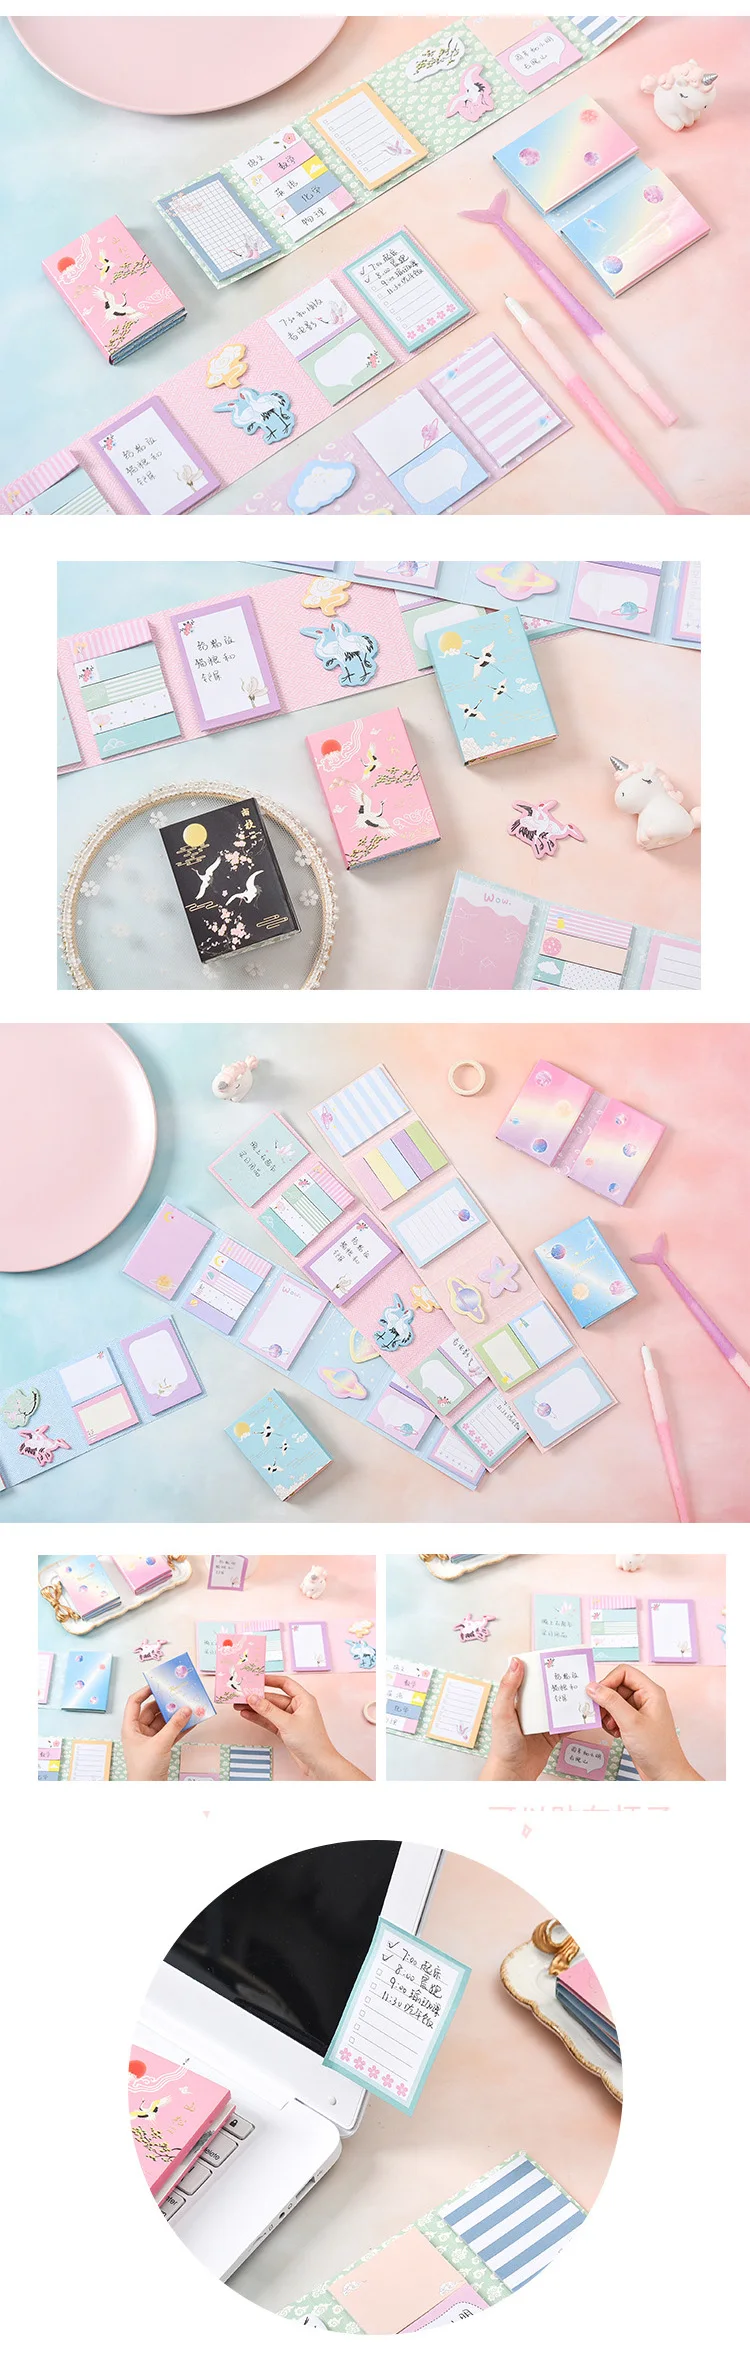 1 шт. милый Kawaii Melody 6 складной блокнот для заметок Липкие заметки закладки для блокнота подарочные канцелярские товары